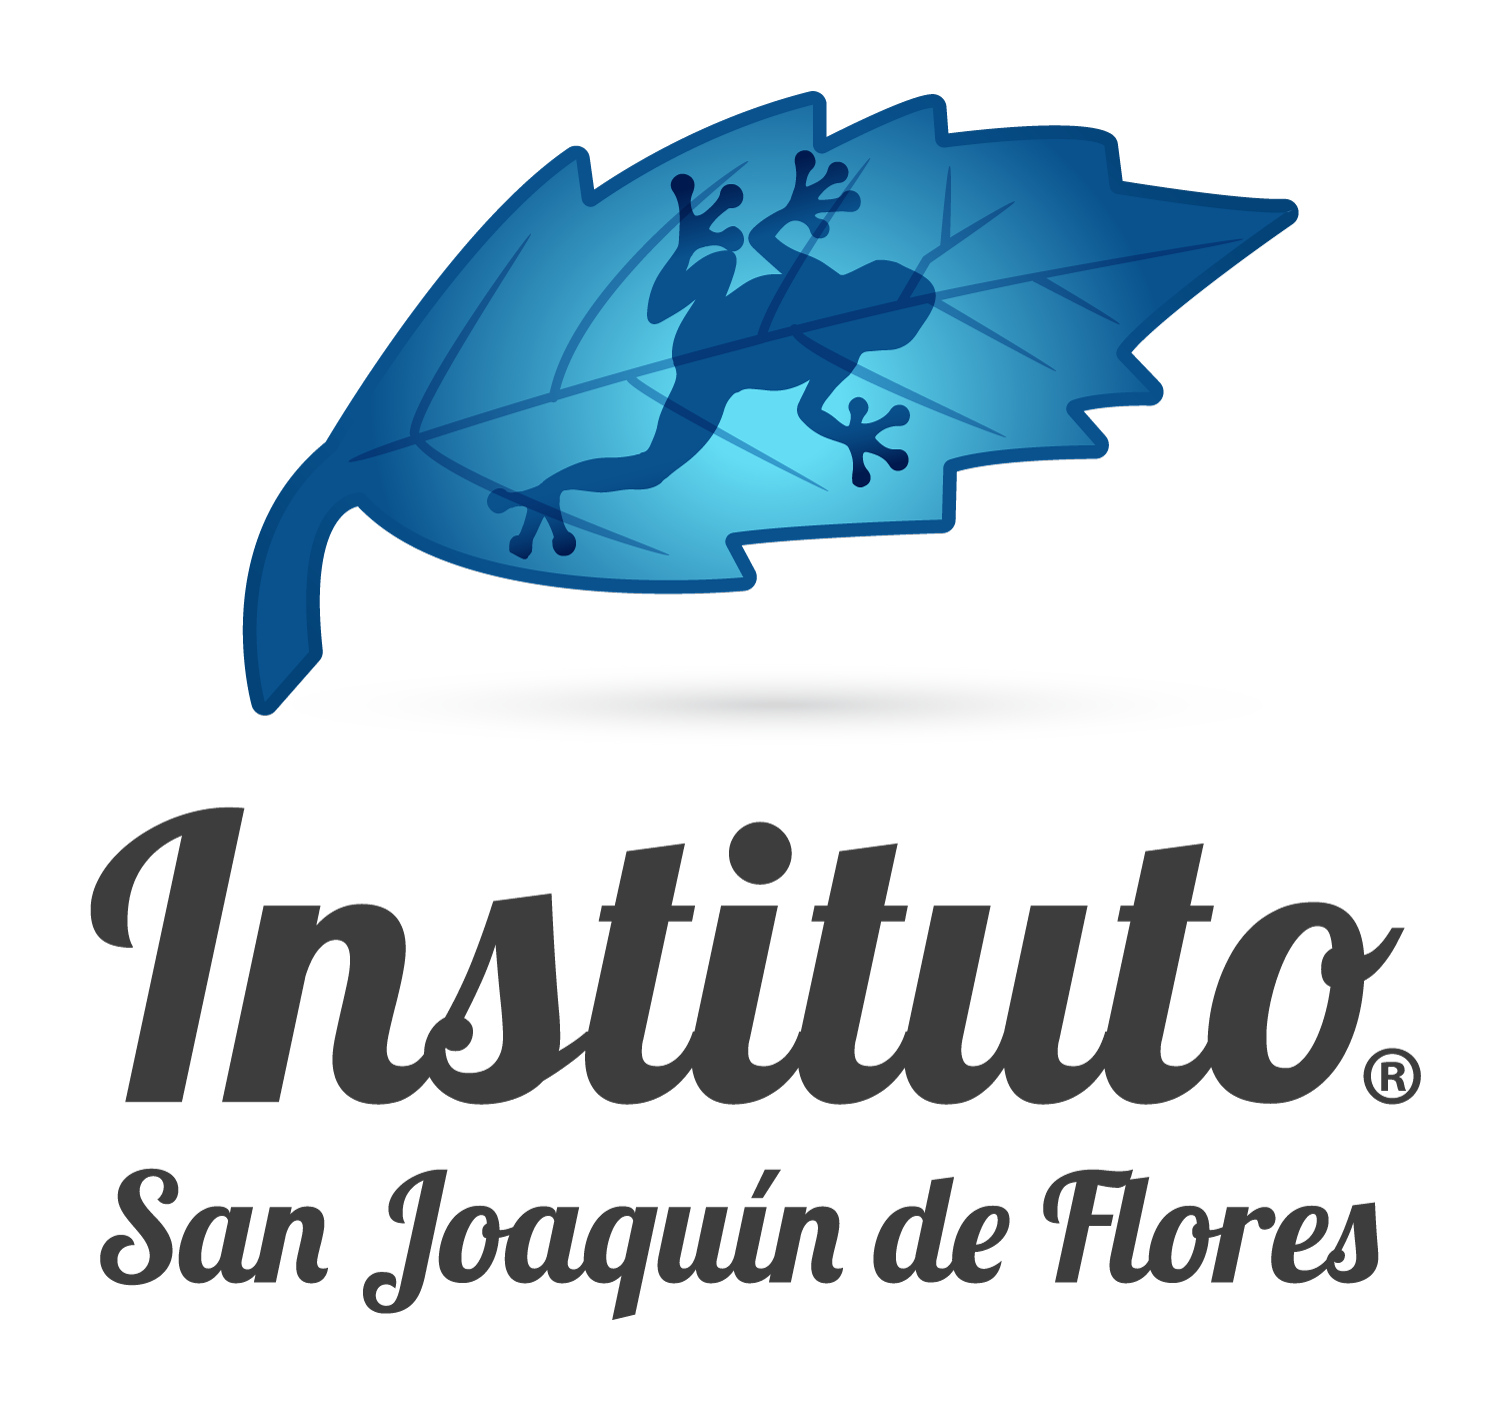 Instituto San Joaquin